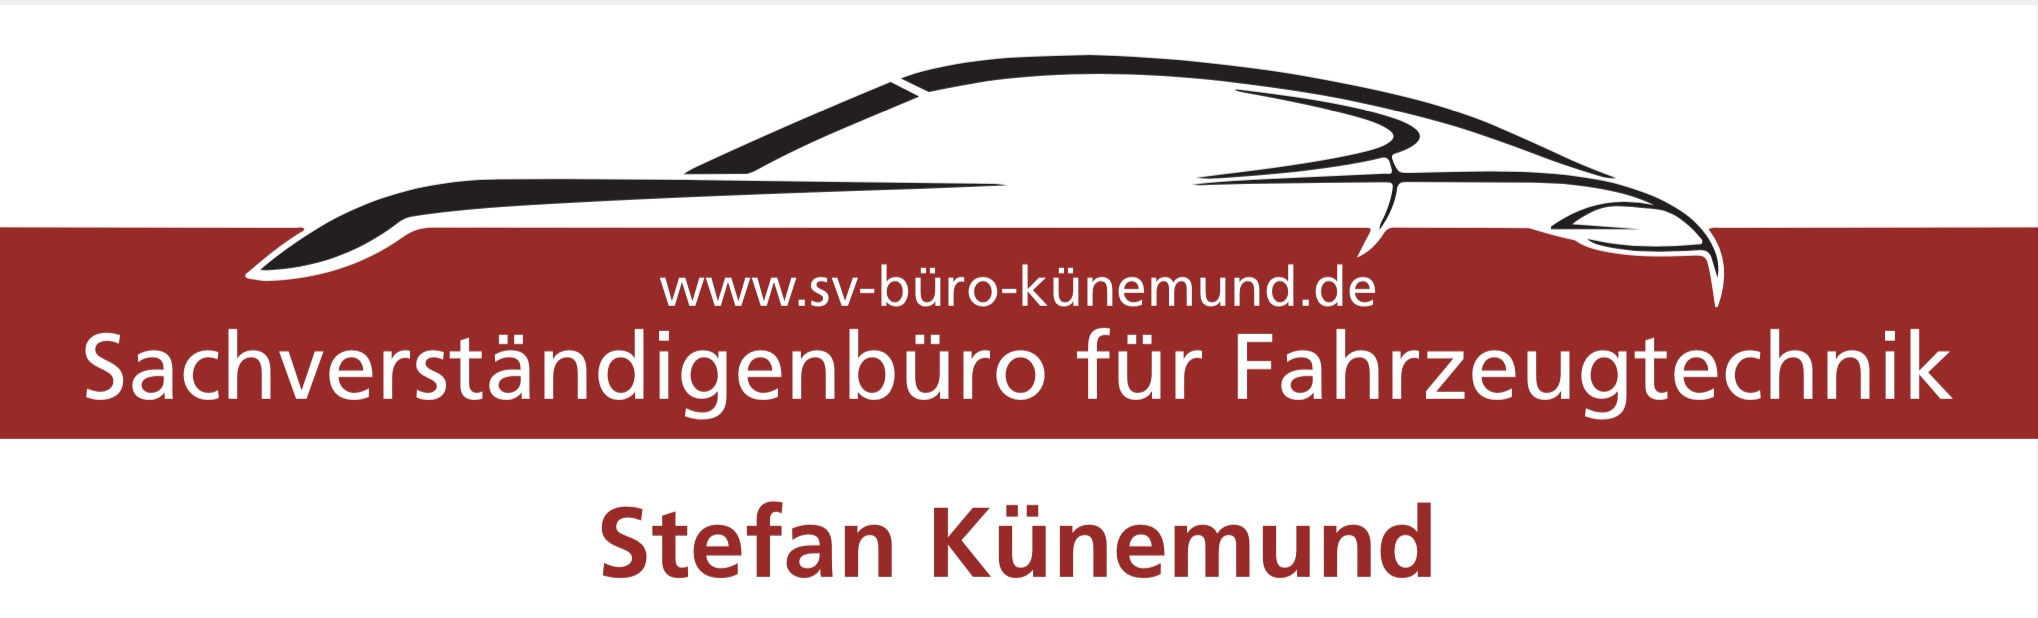 Sachverständigenbüro für Fahrzeugtechnik Stefan Künemund